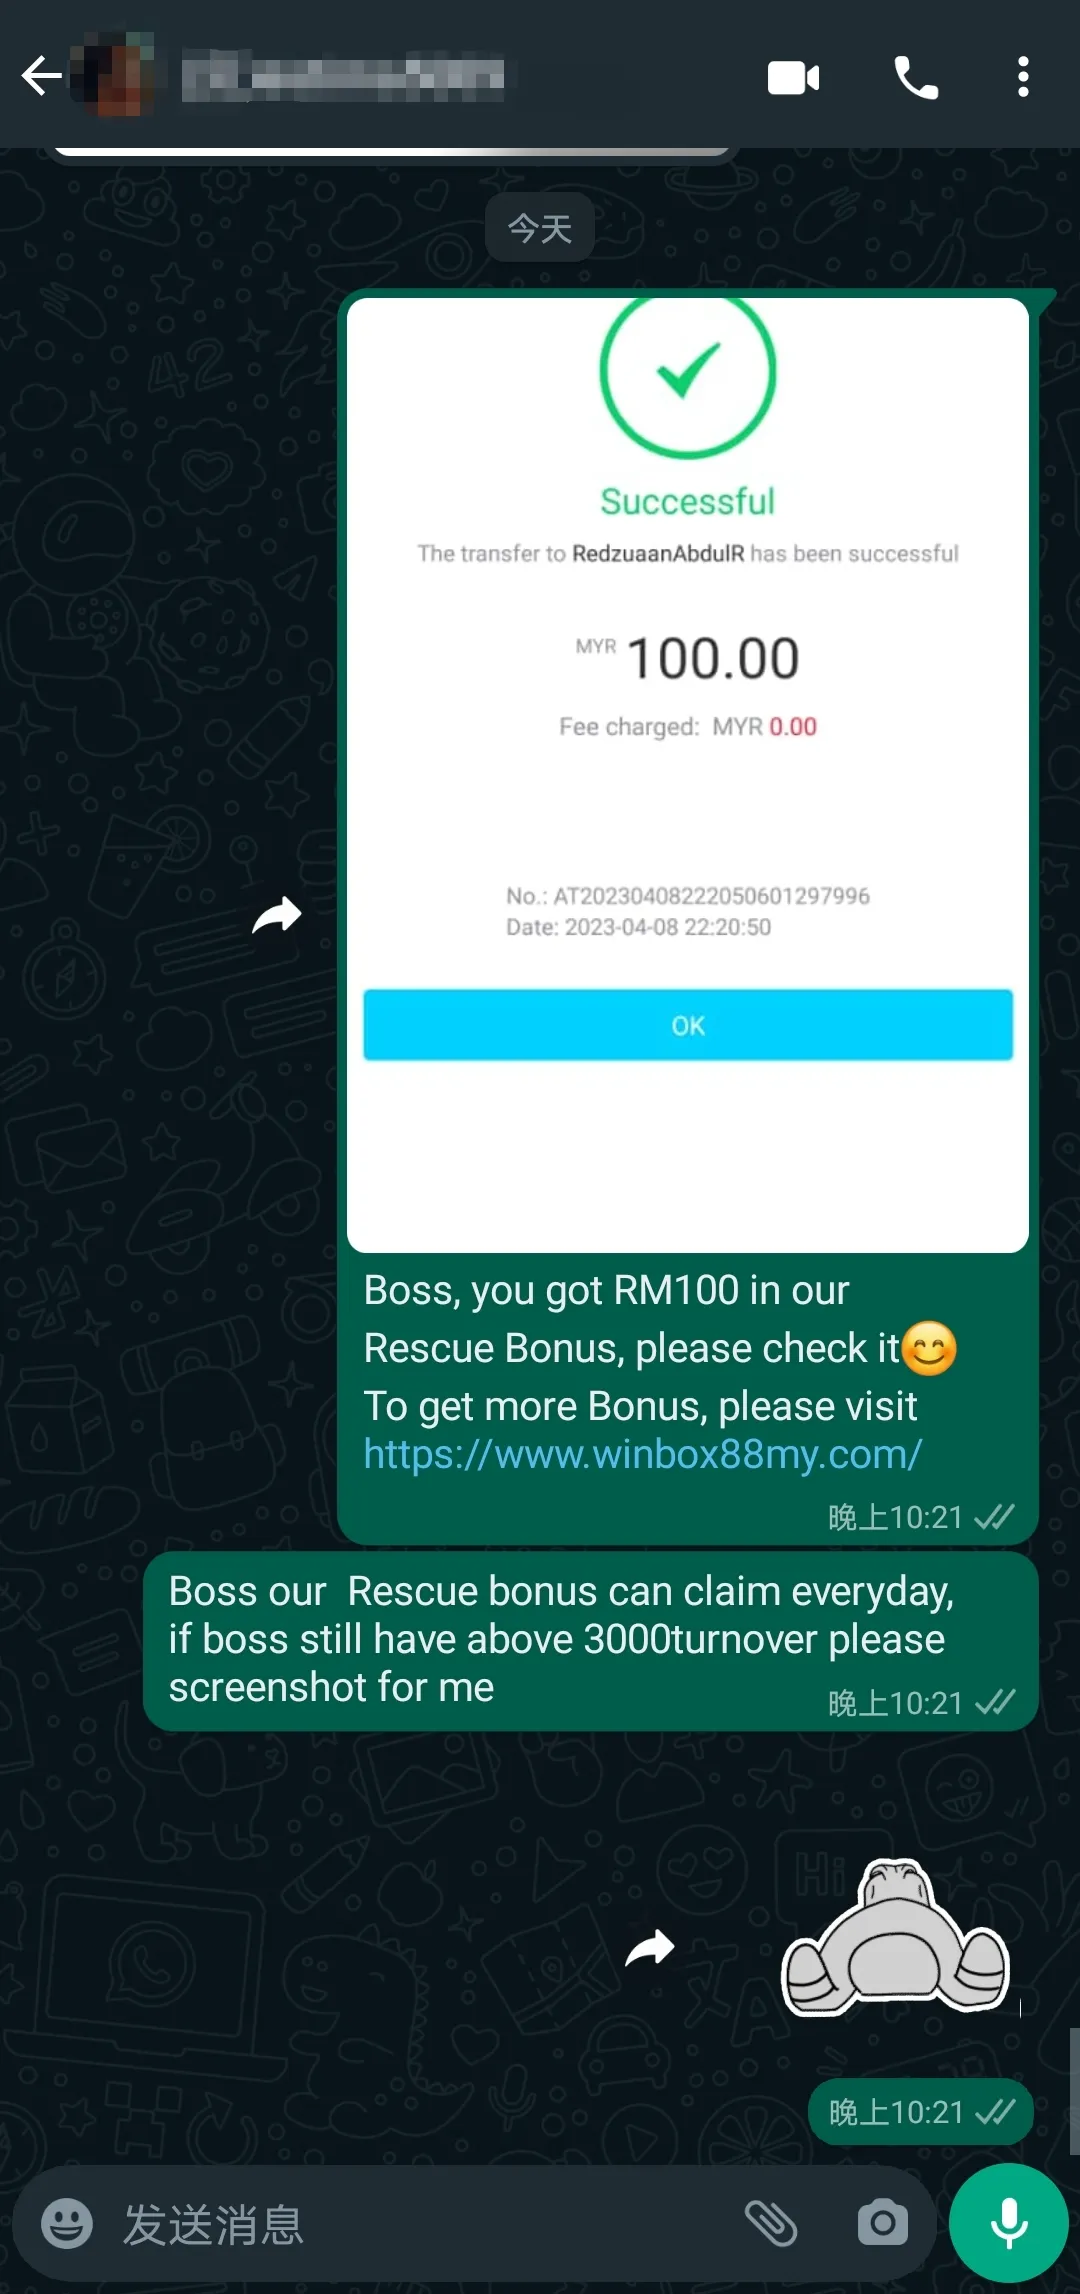 winbox rescue bonus past winner screenshot 88